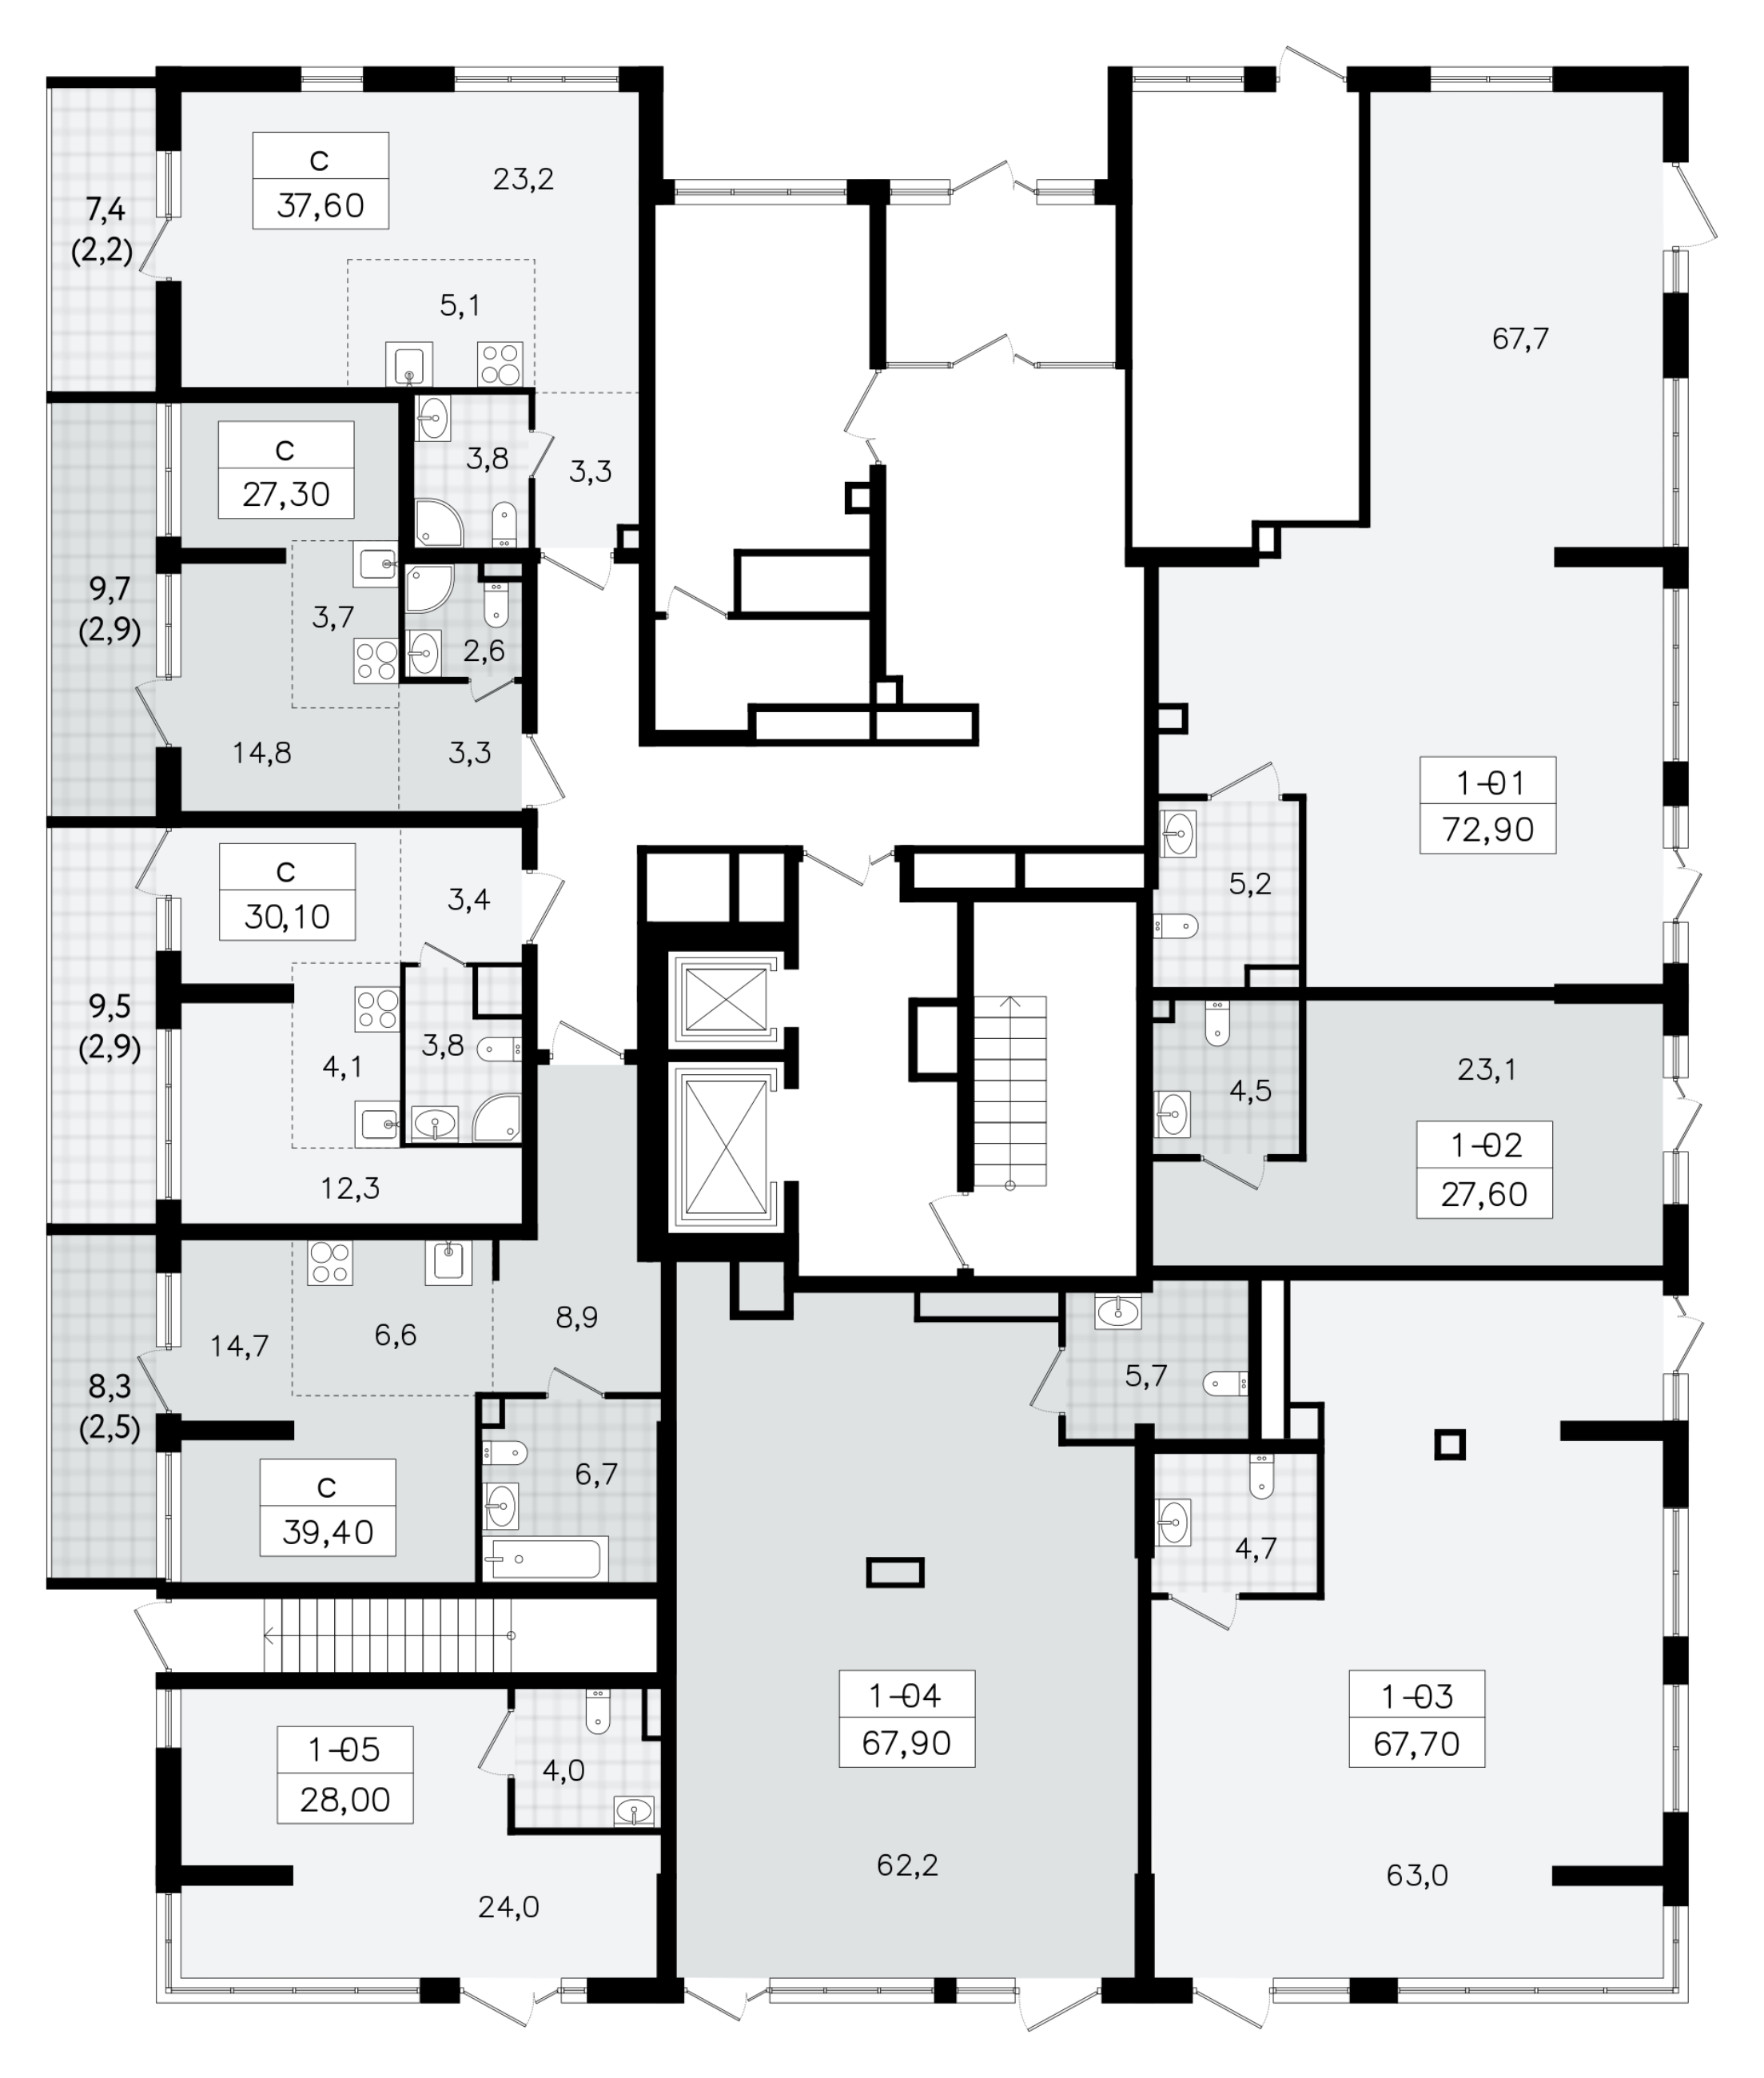 Помещение, 72.9 м² - планировка этажа